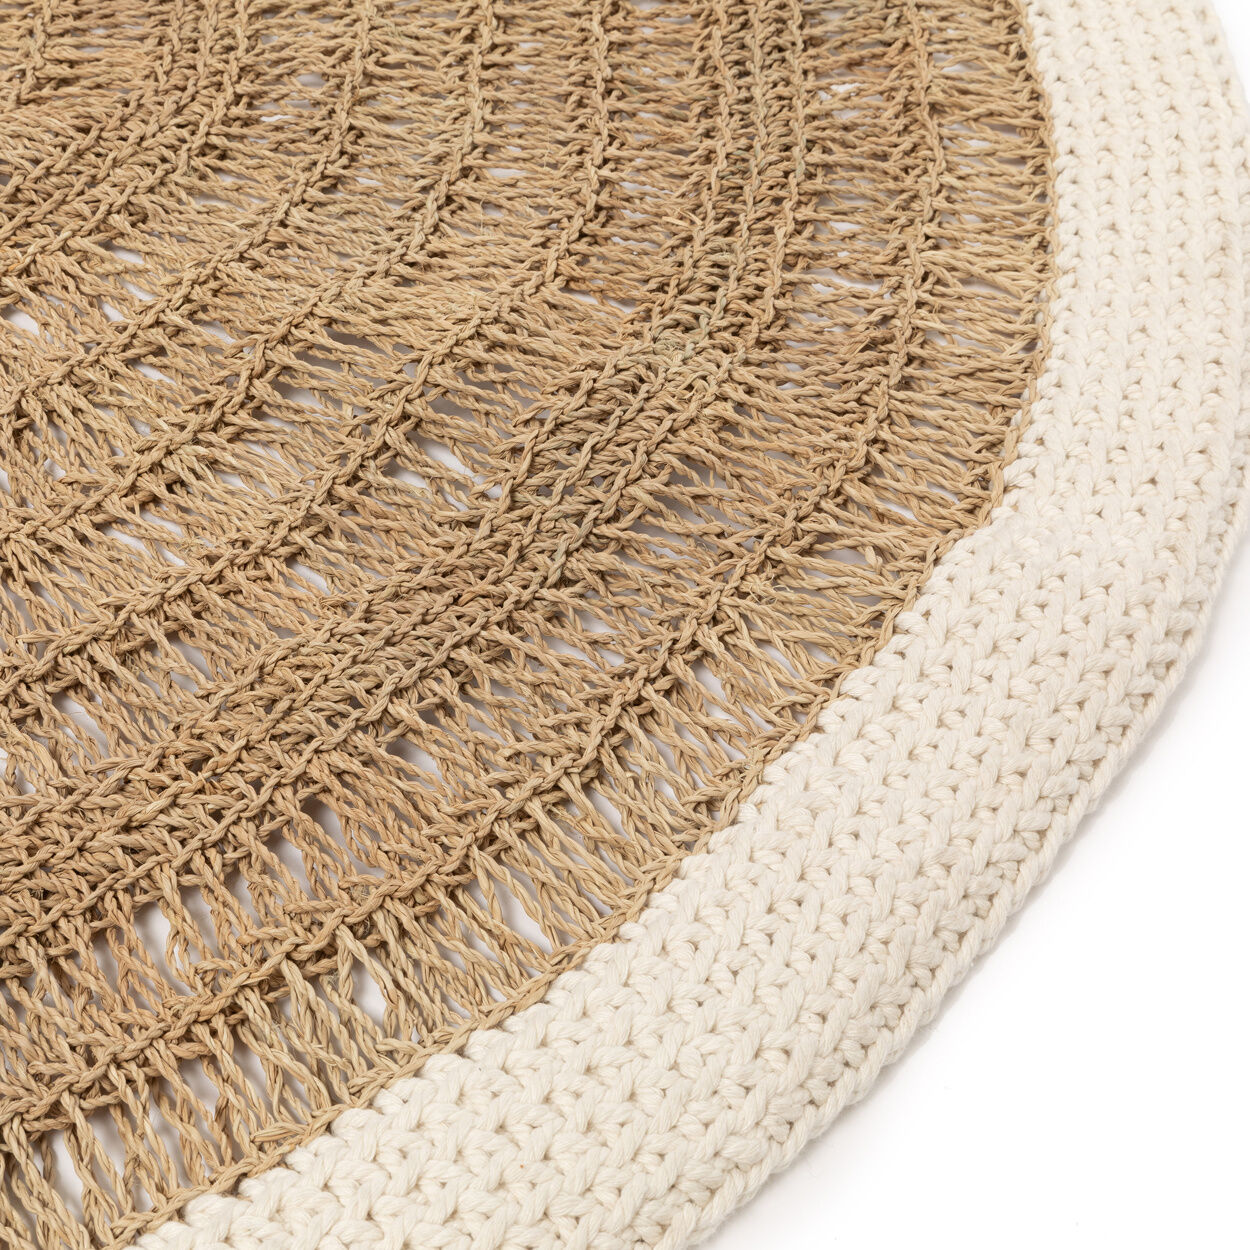 Runder Teppich aus Seegras und Baumwolle – Natur / Weiß – 100